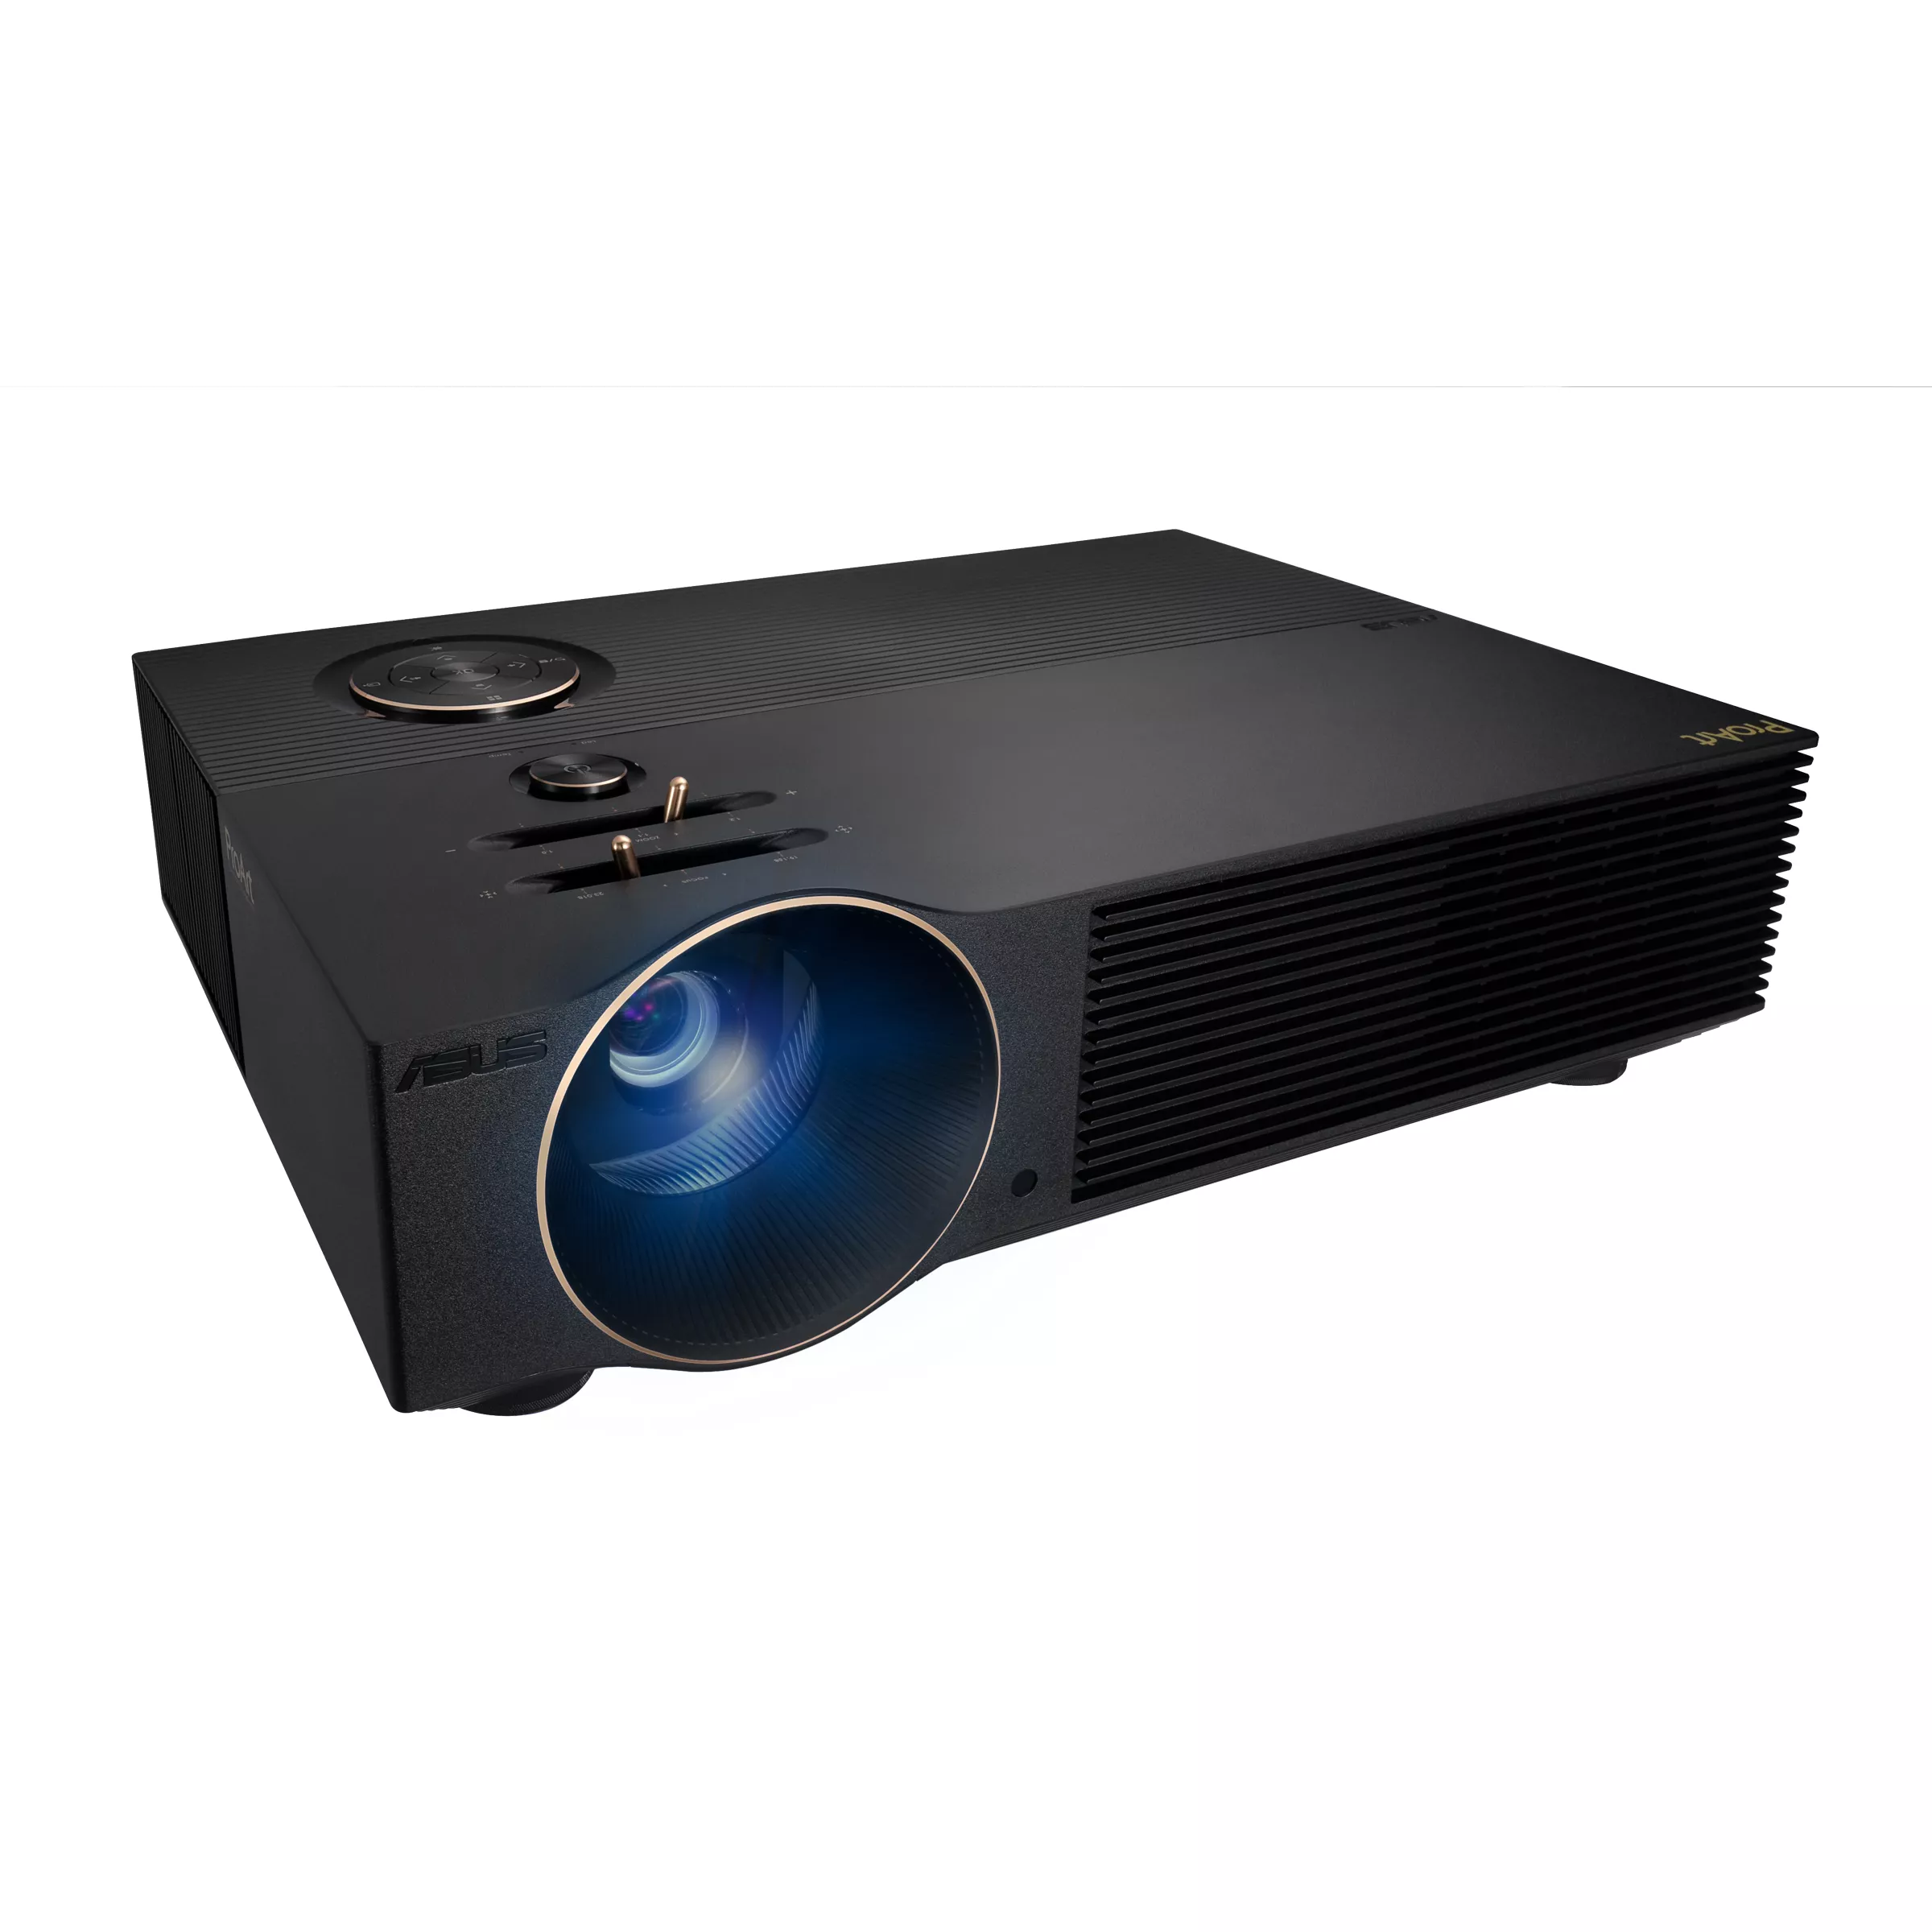 Revendeur officiel Vidéoprojecteur Professionnel ASUS ProArt A1 LED FHD 3000 lumens professional projector